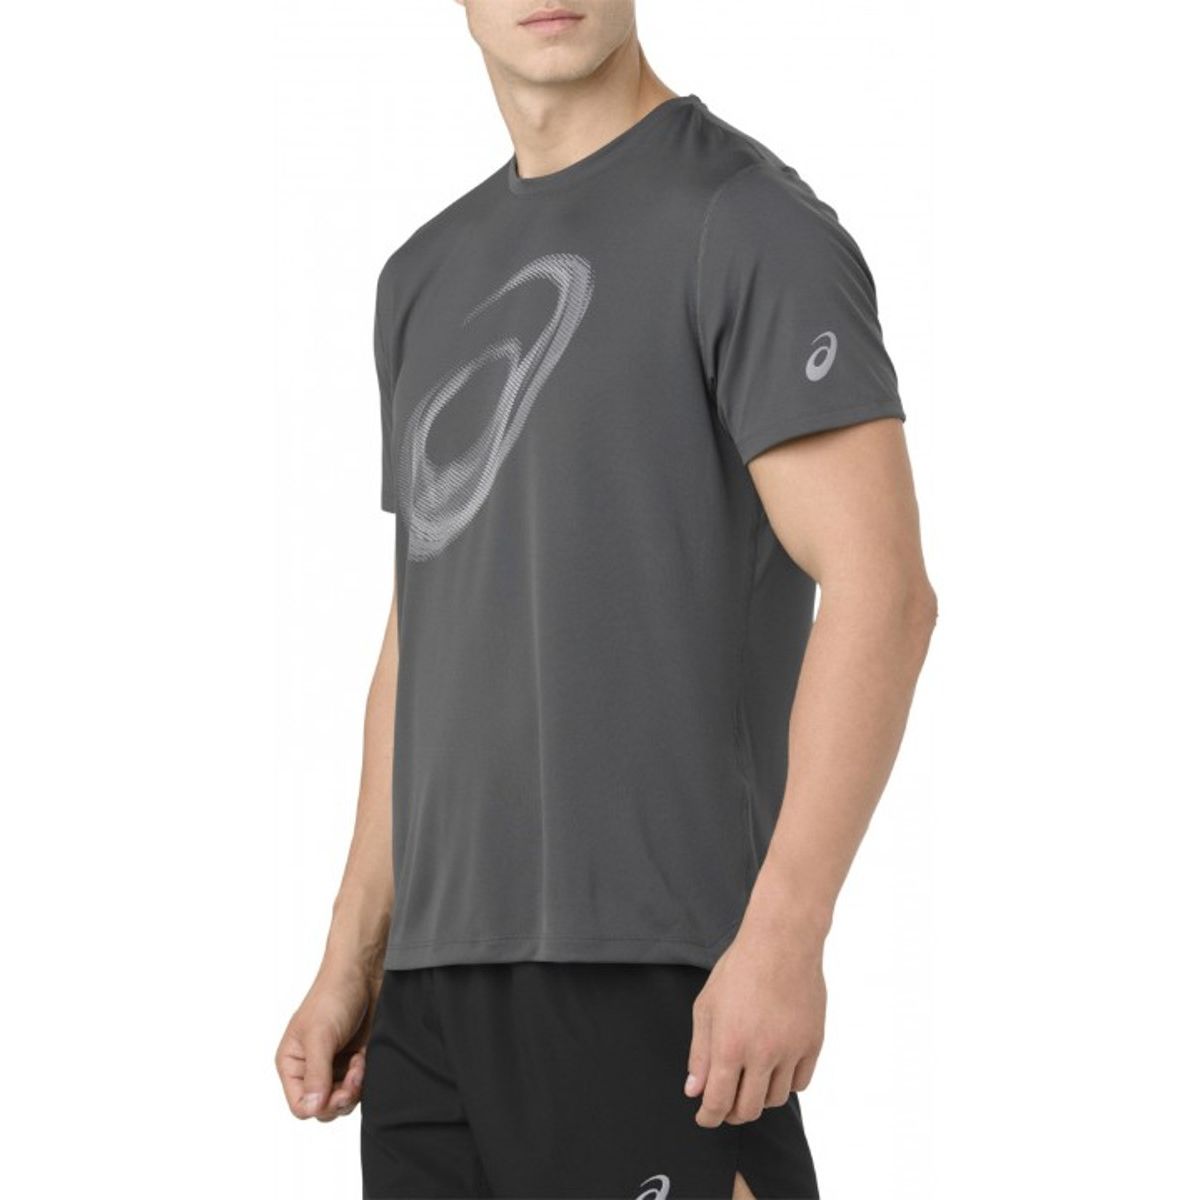 Asics Silver SS Top Moire Men's T-Shirt 2011A007-022